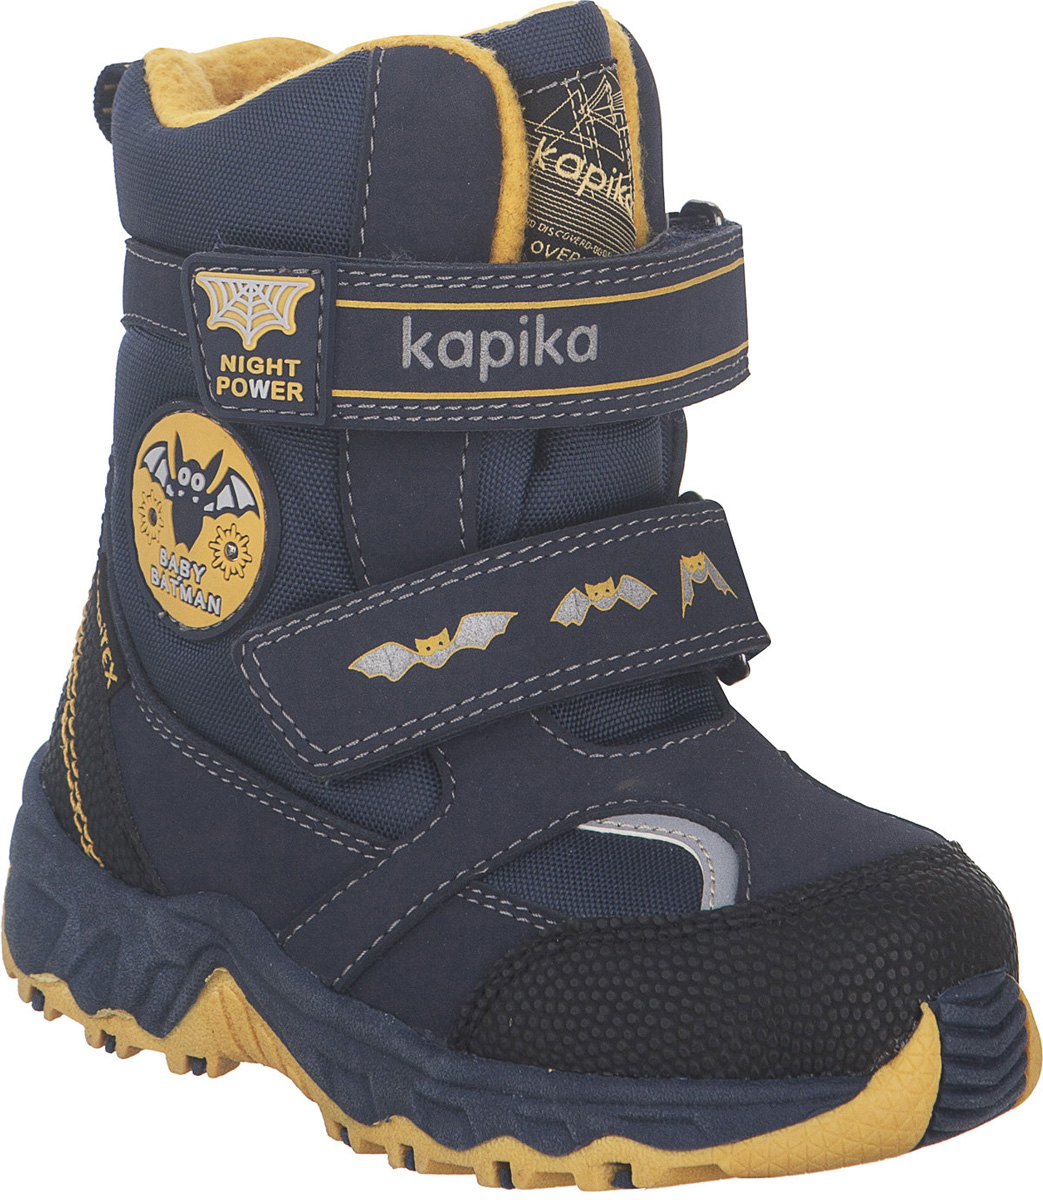 Ботинки для мальчика Kapika KapiTEX, цвет: темно-синий, желтый. 41205-2. Размер 23